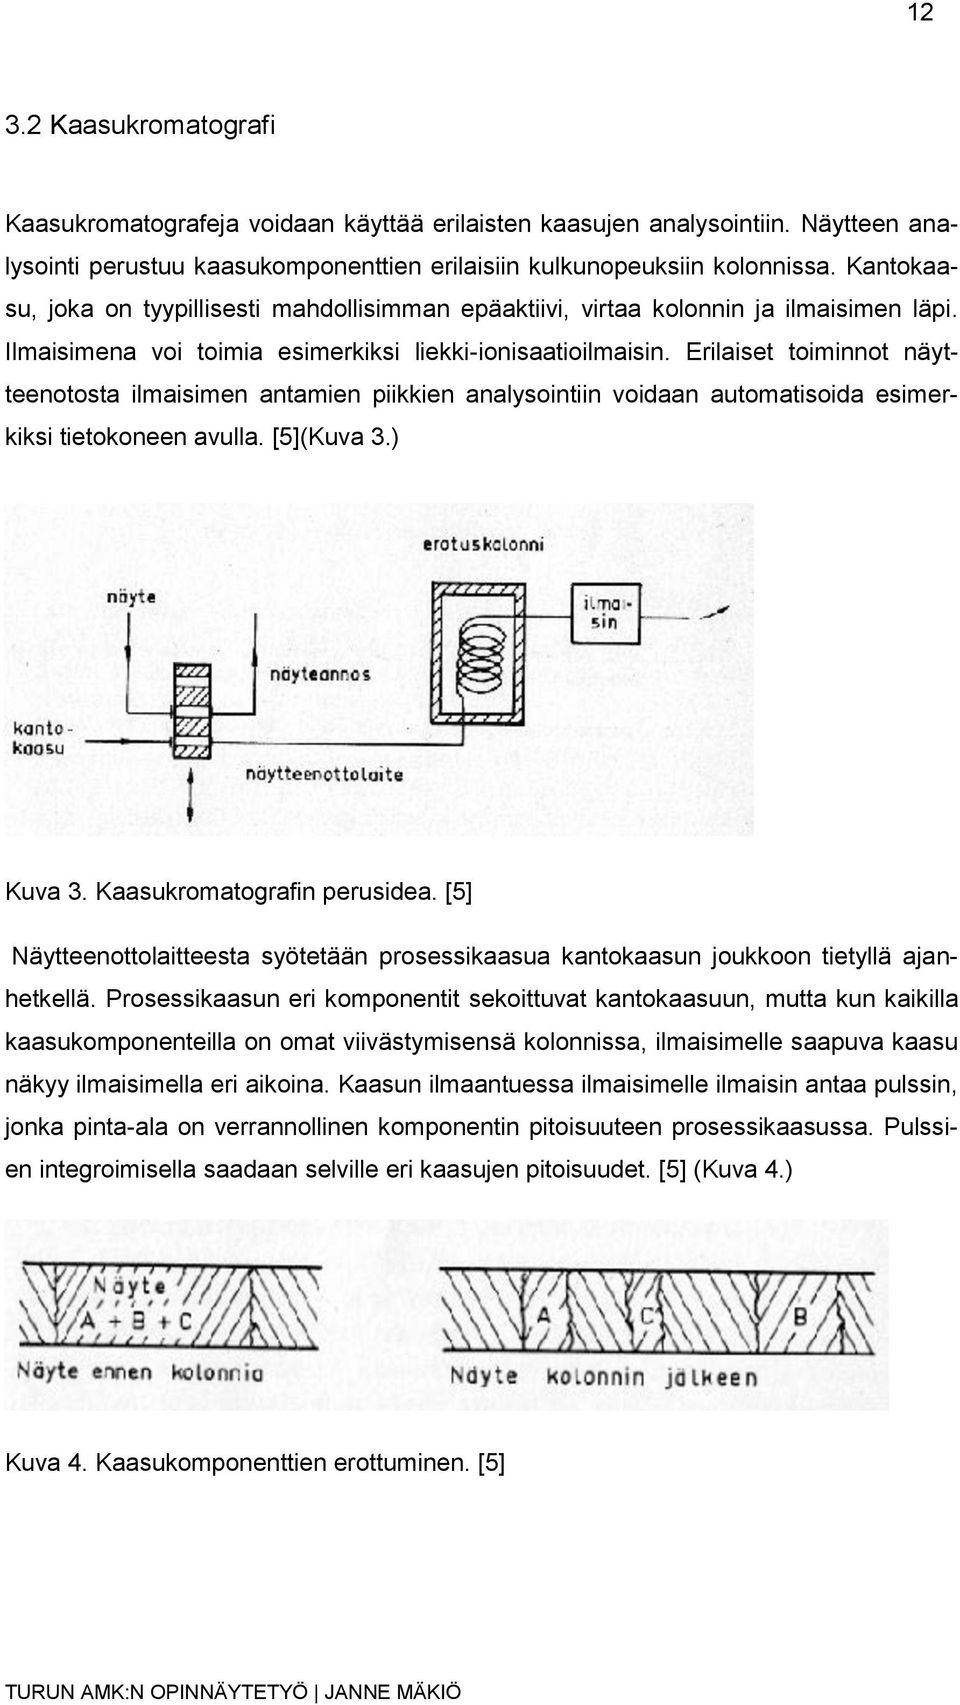 Erilaiset toiminnot näytteenotosta ilmaisimen antamien piikkien analysointiin voidaan automatisoida esimerkiksi tietokoneen avulla. [5](Kuva 3.) Kuva 3. Kaasukromatografin perusidea.